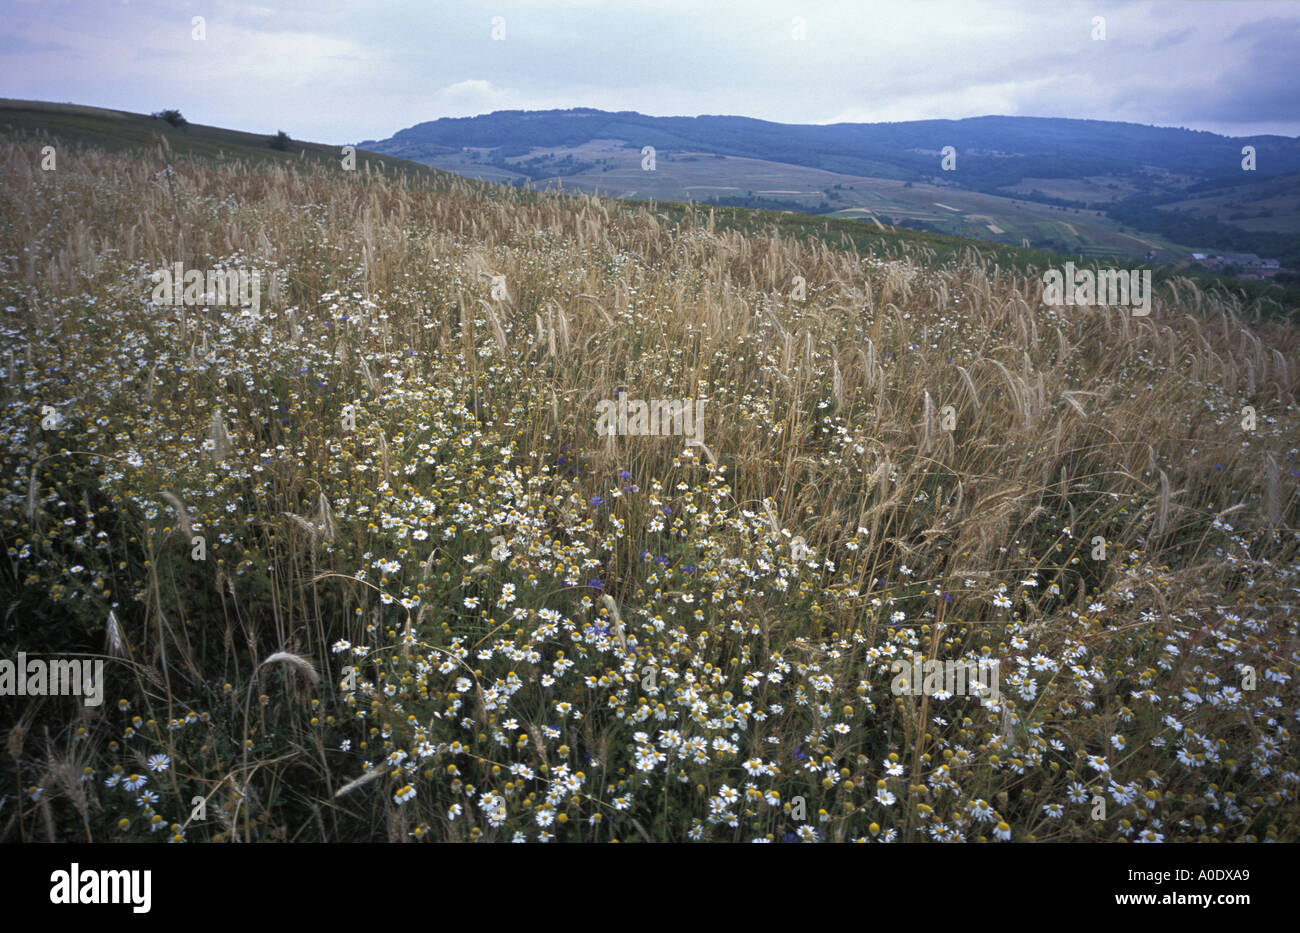 Un petit domaine de l'engrain une ancienne variété de blé cultivé en Transylvanie Roumanie pour hat faisant Banque D'Images